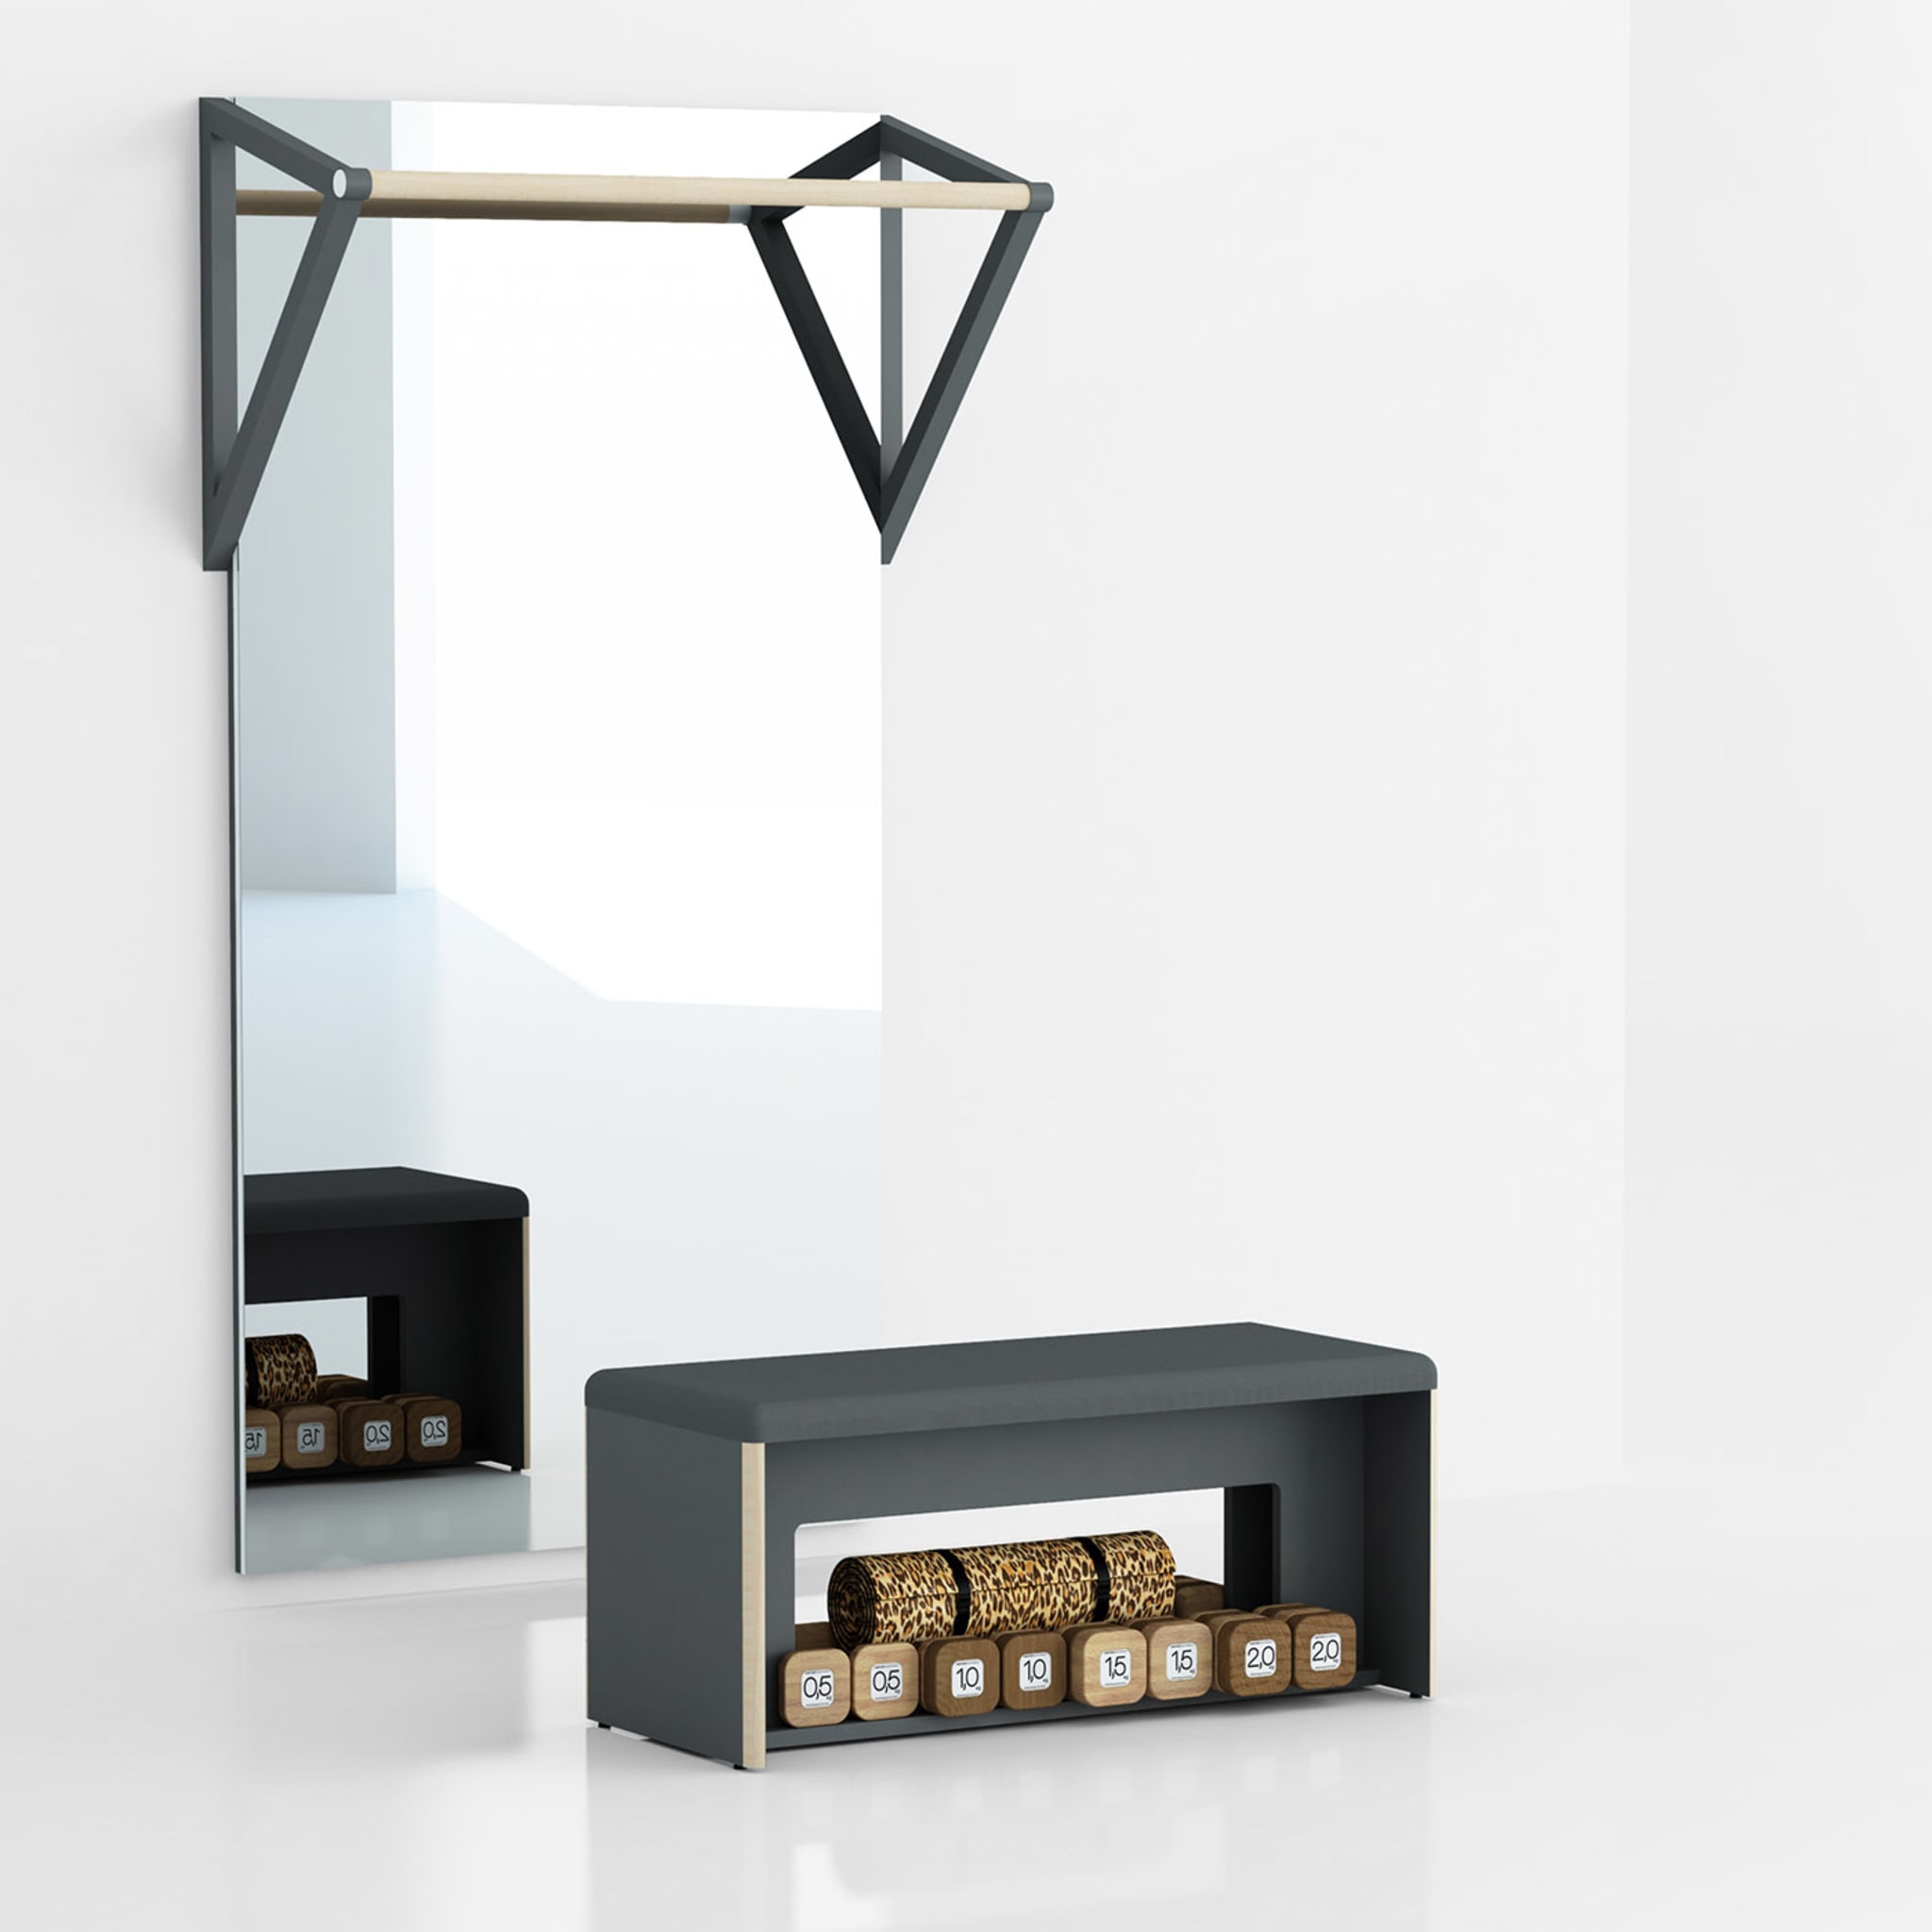 Narciso Fitness-Spiegel von Basaglia und Rota Nodari - Alternative Ansicht 1